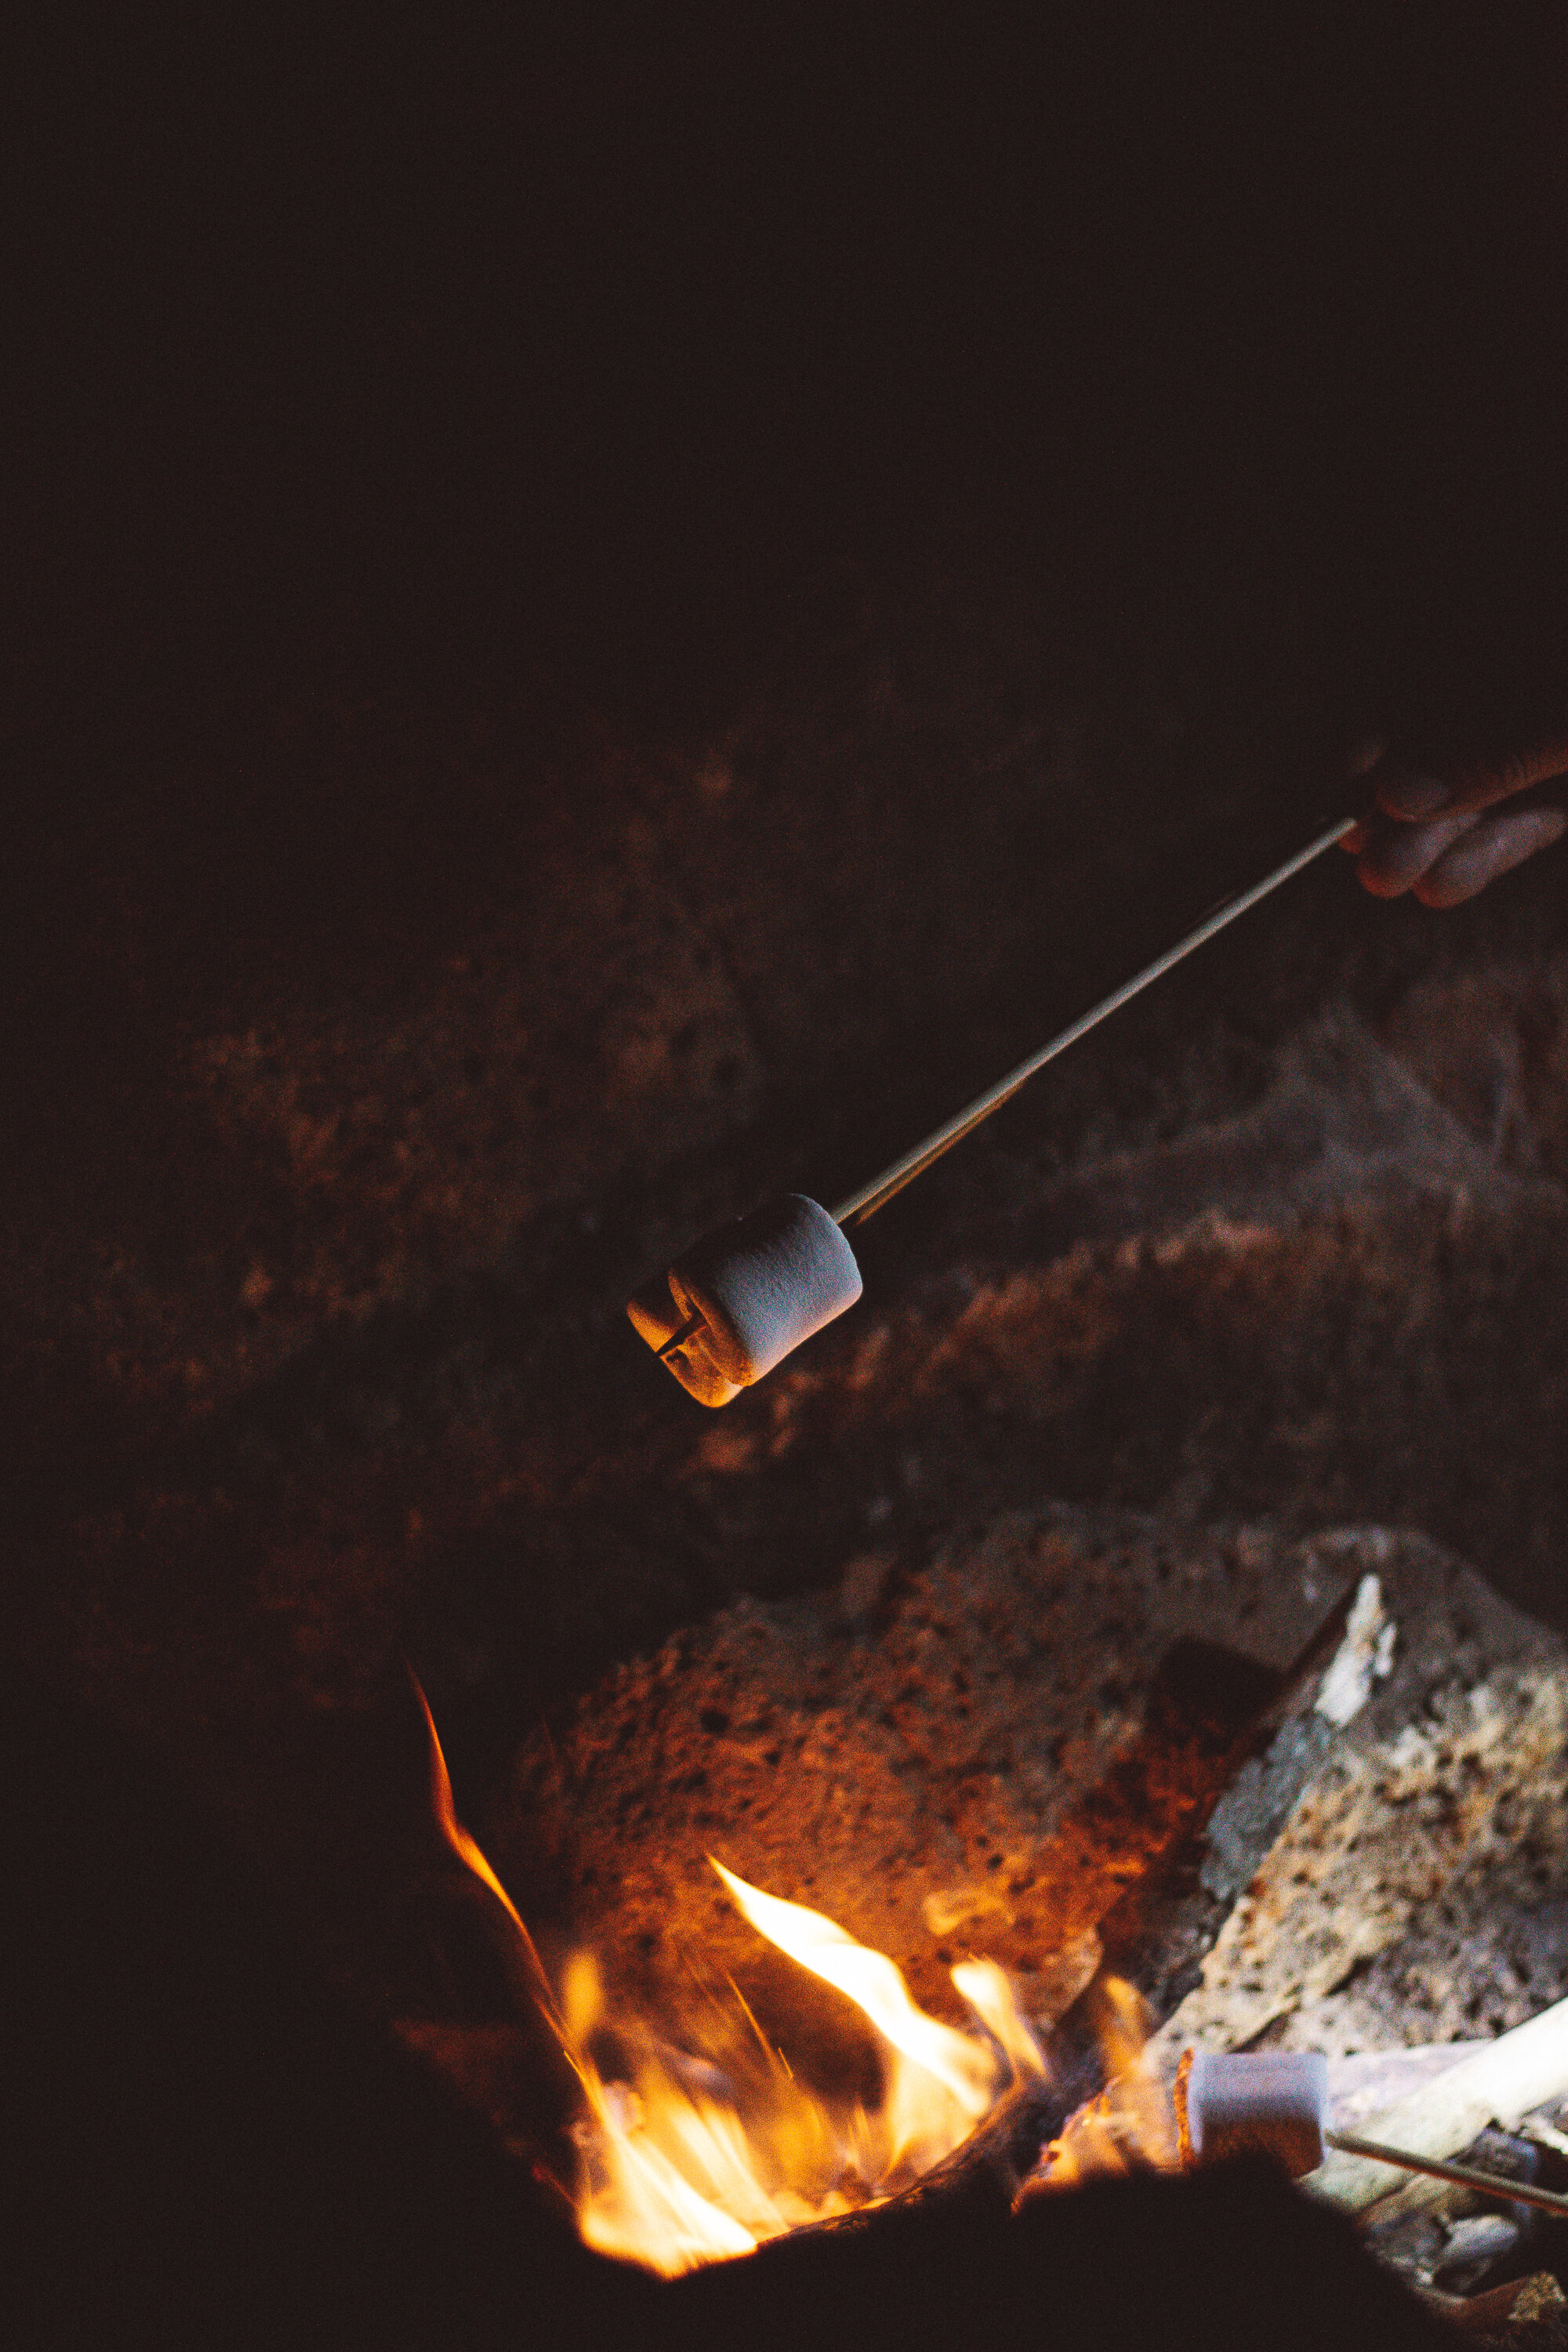 Marshmallows über dem Feuer grillen - hmmm lecker - oder ein Stockbrot